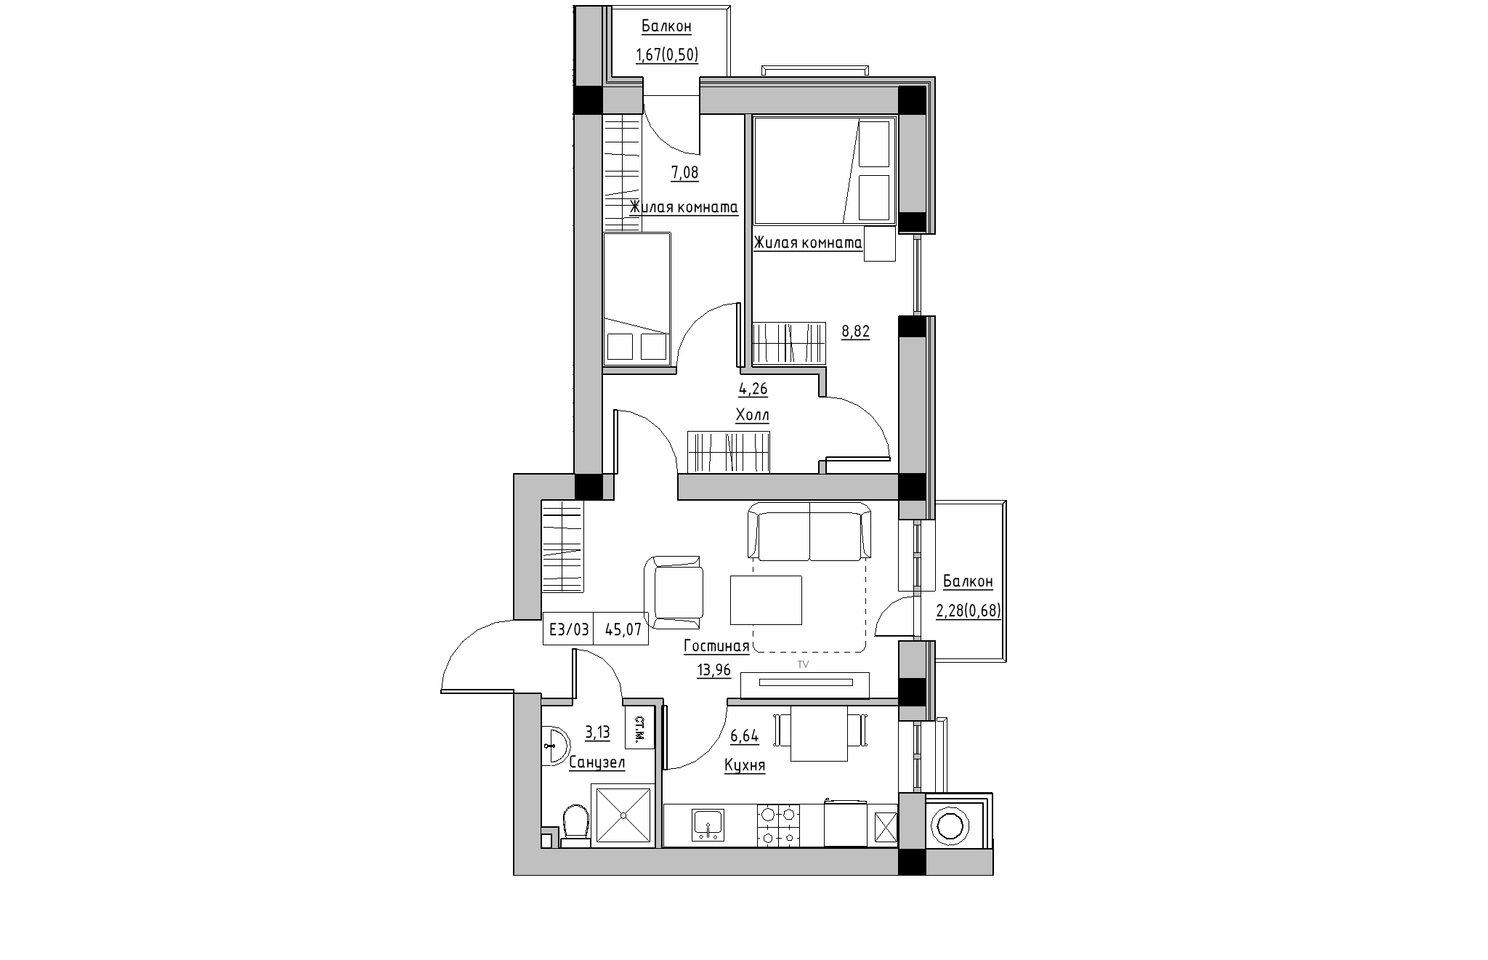 Планировка 3-к квартира площей 45.07м2, KS-010-05/0011.